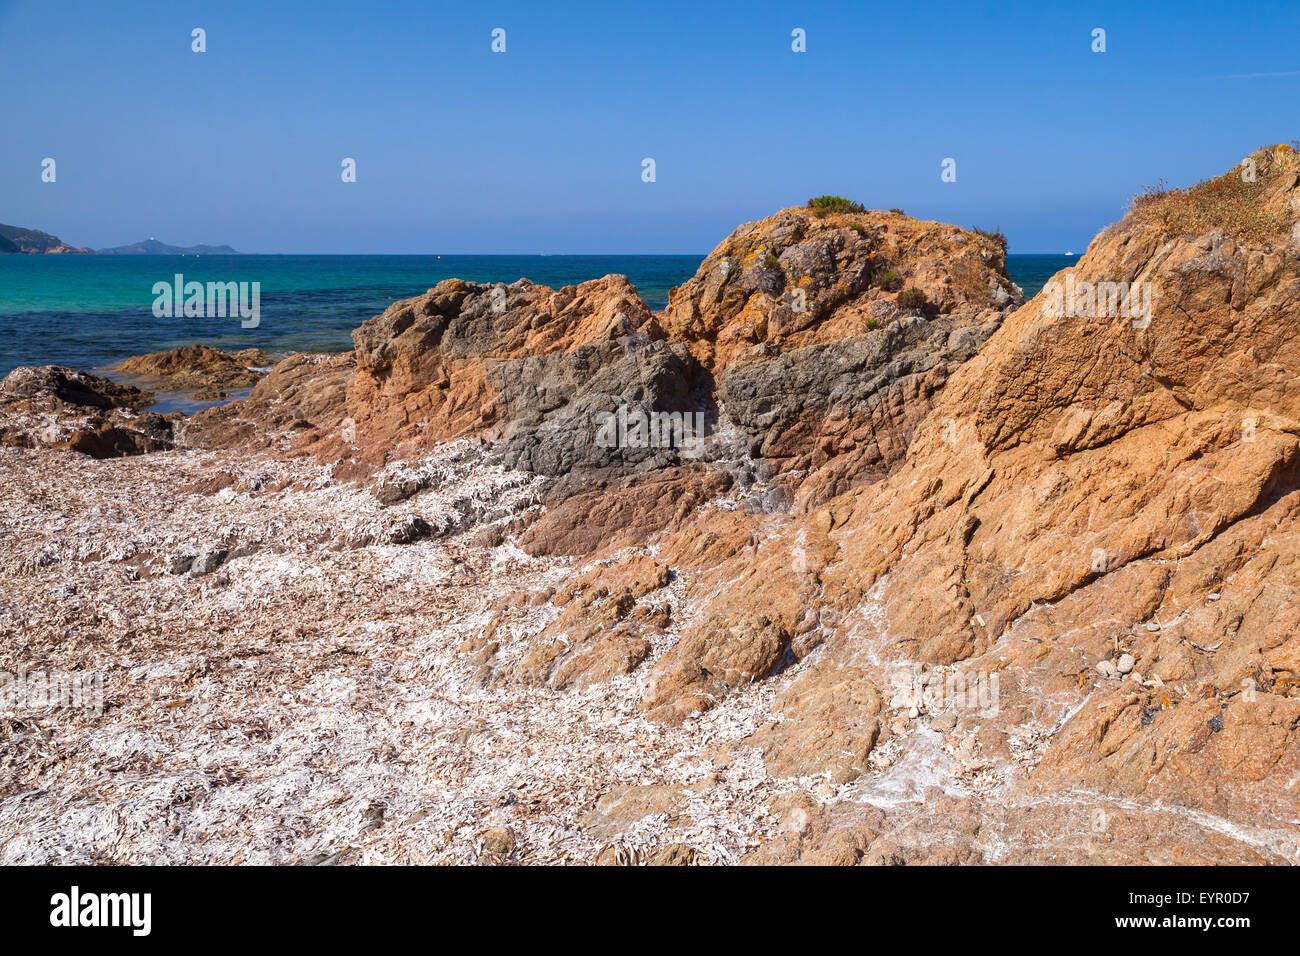 Dry algae on rocky Mediterranean coast. South region of Corsica island, France. Plage De Capo Di Feno landscape Stock Photo